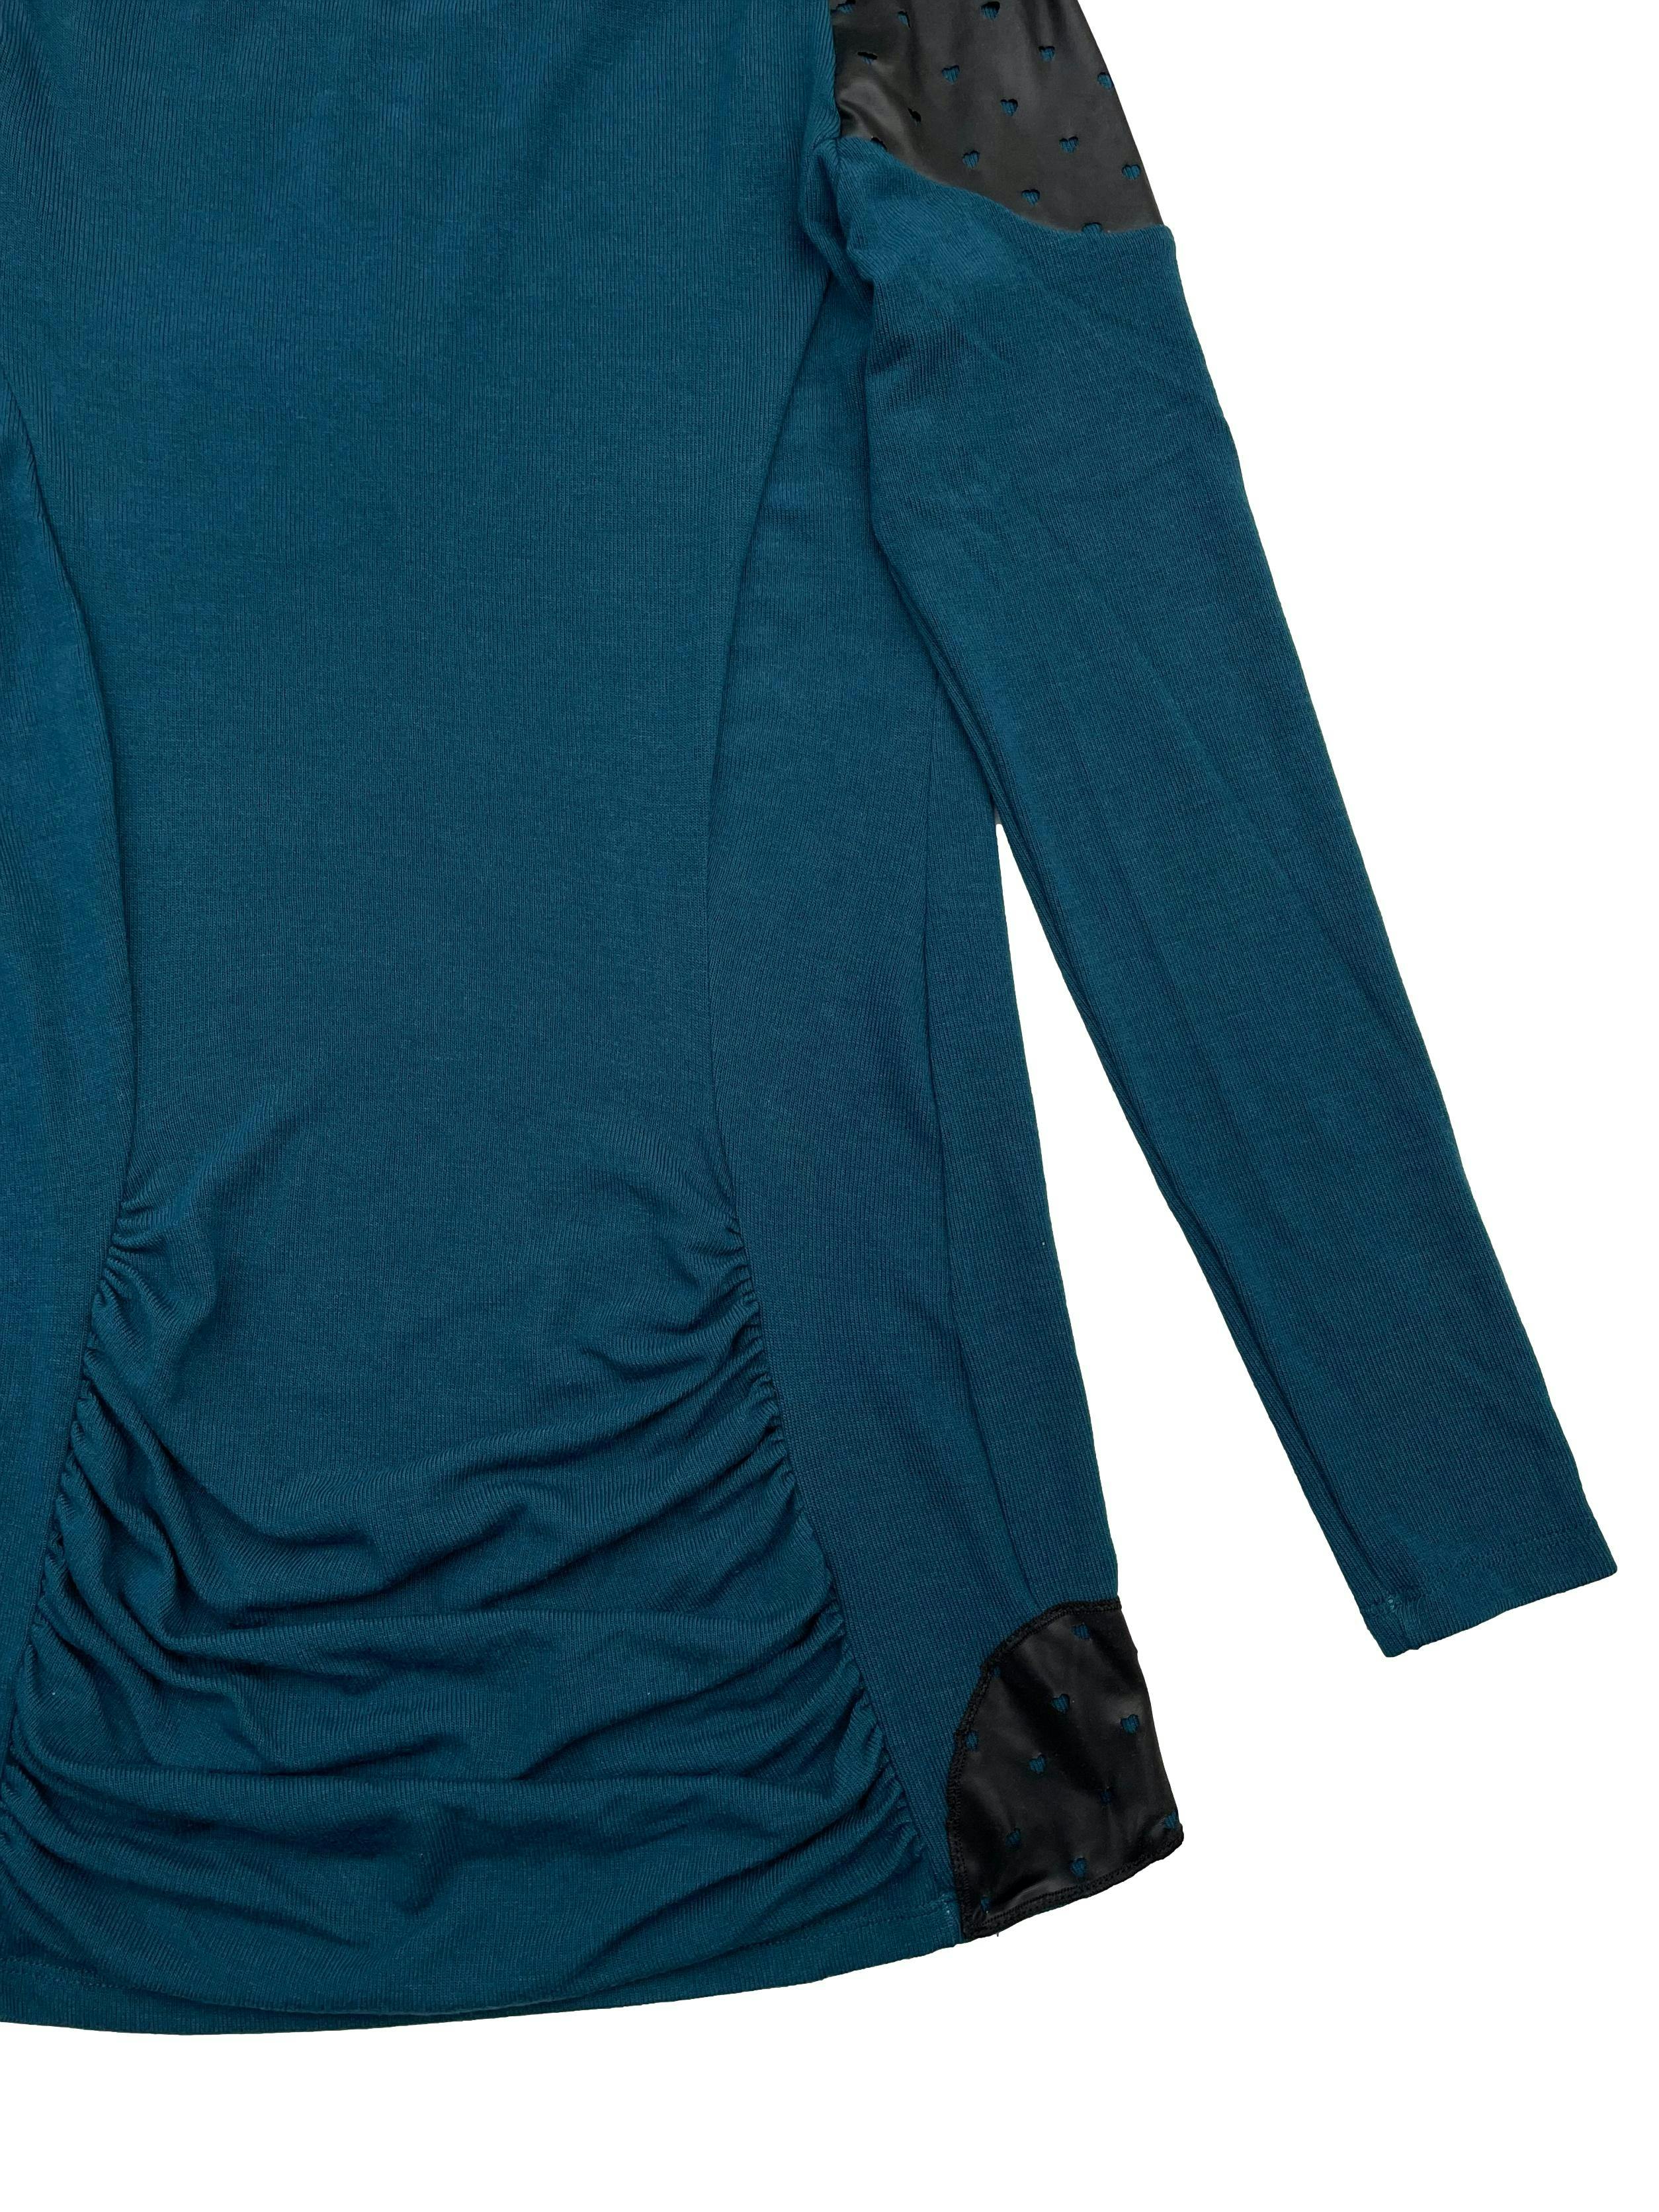 Chompa delgada Domo azul verdoso con aplicaciones tipo cuerina, espalda con drapeado cerca a la basta. Busto 85cm Largo 70-80cm. Nuevo con etiqueta.